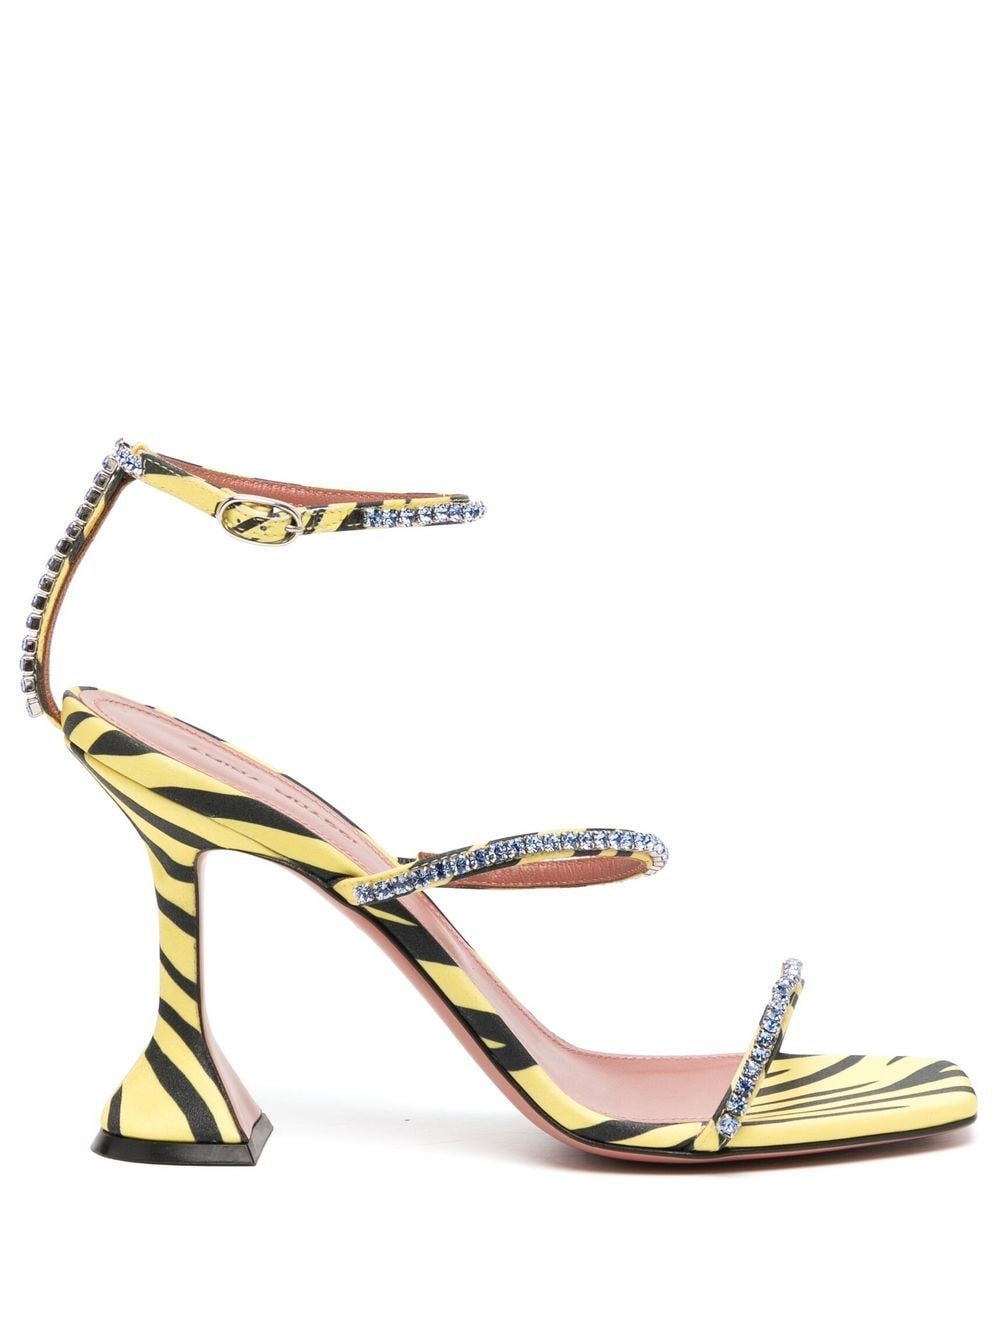 Amina Muaddi Gilda 80mm zebra-print sandals - Yellow von Amina Muaddi